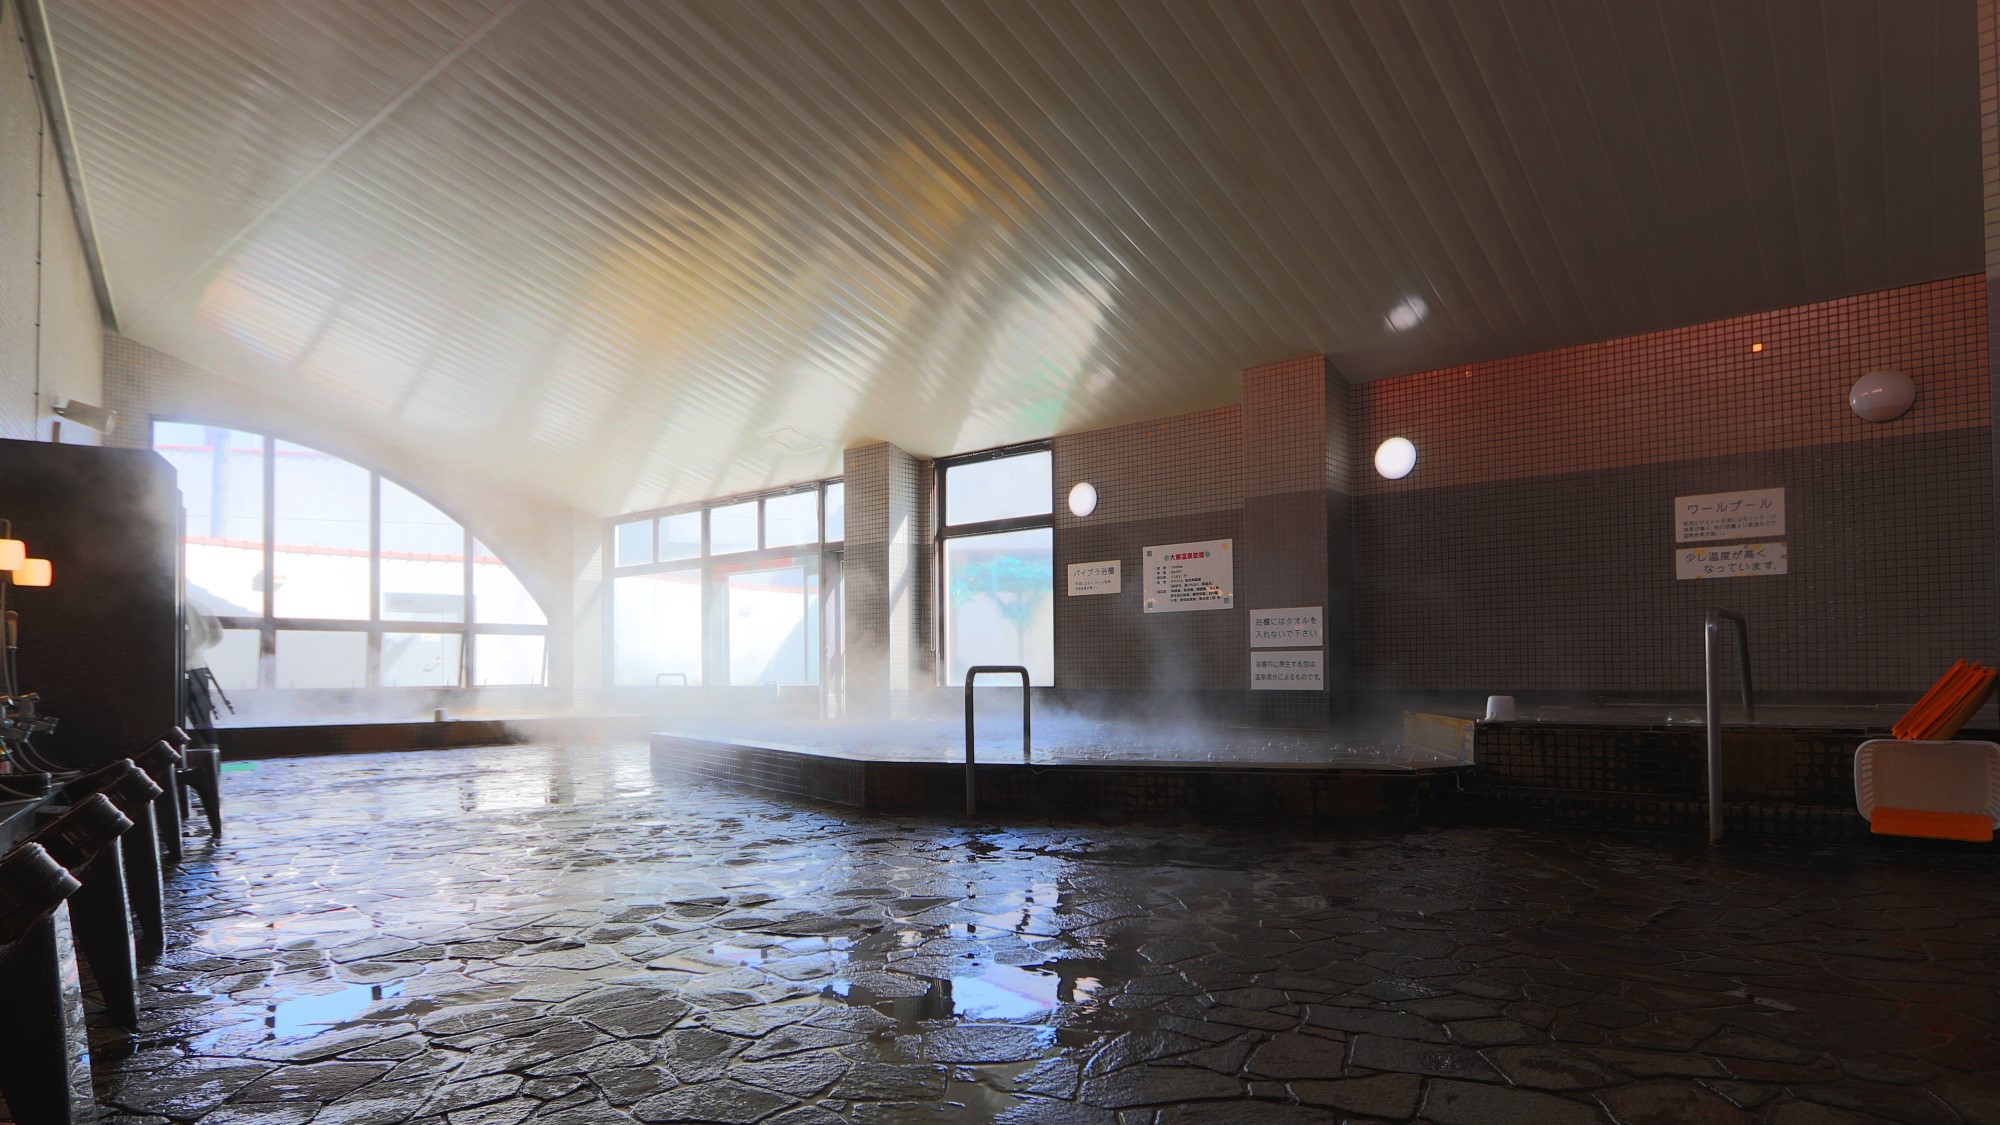 滾々と湧き出るアルカリ性の天然温泉は、珍しい茶褐色の湯です。